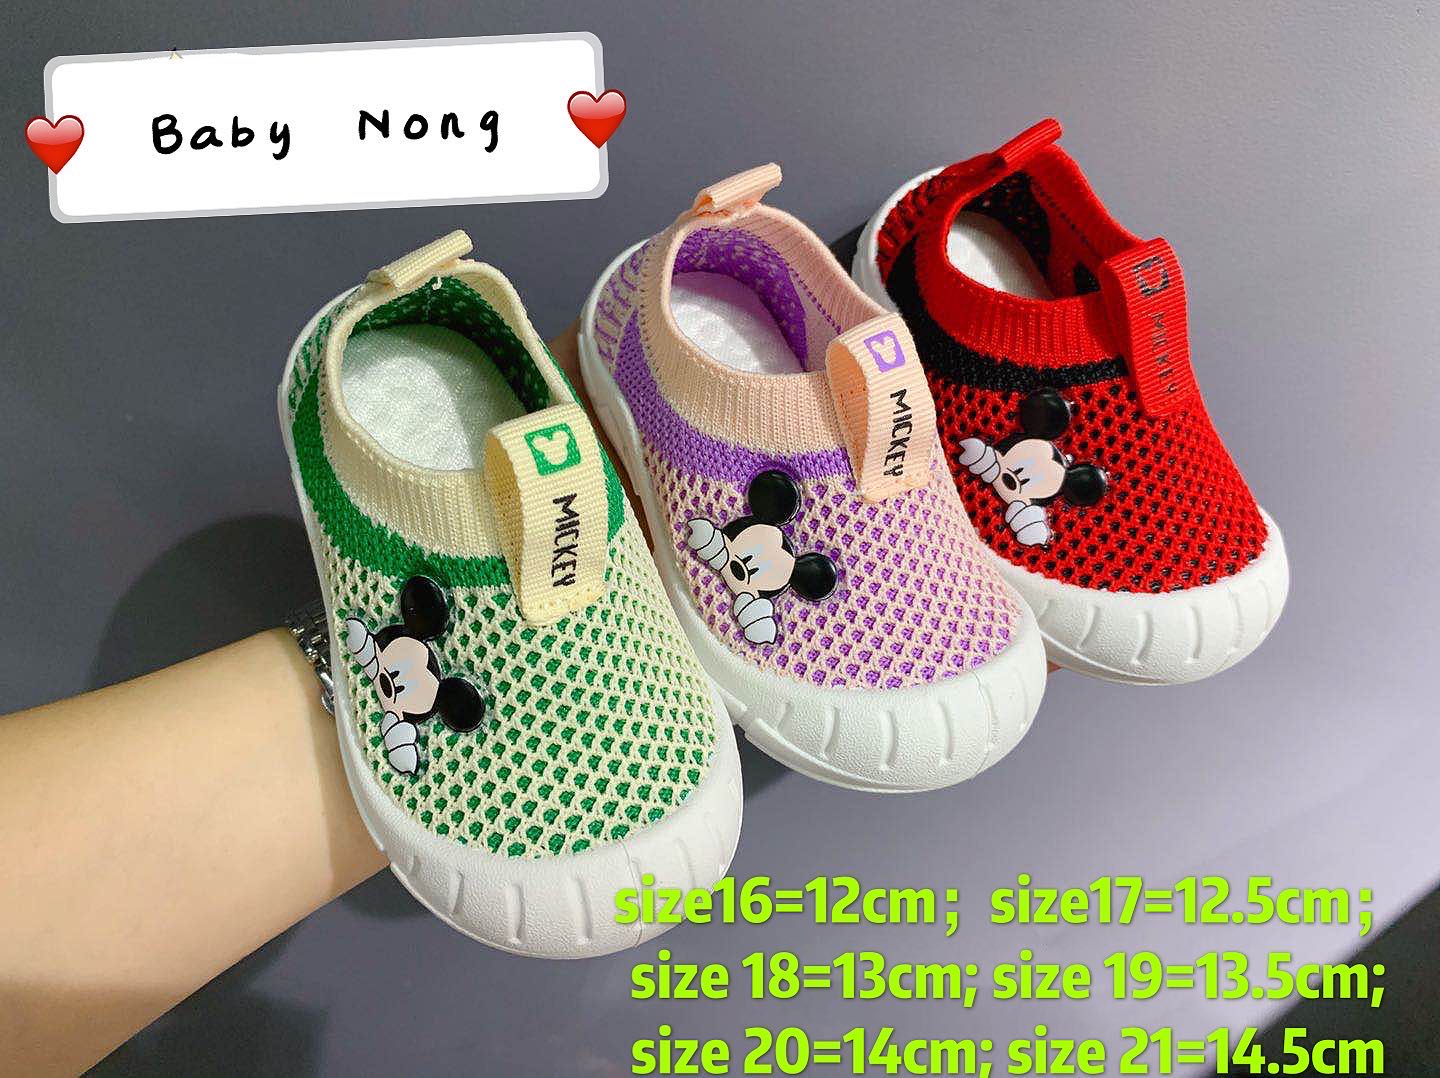 Baby Nong ใหม่ใบบนเด็กรองเท้าเด็กชายและเด็กหญิงรองเท้าลำลองที่มีน้ำหนักเบาระบายอากาศนุ่มลื่นบนรองเท้าเด็ก ลาย Micky 3สี(Red green pink) 6size(16-21)